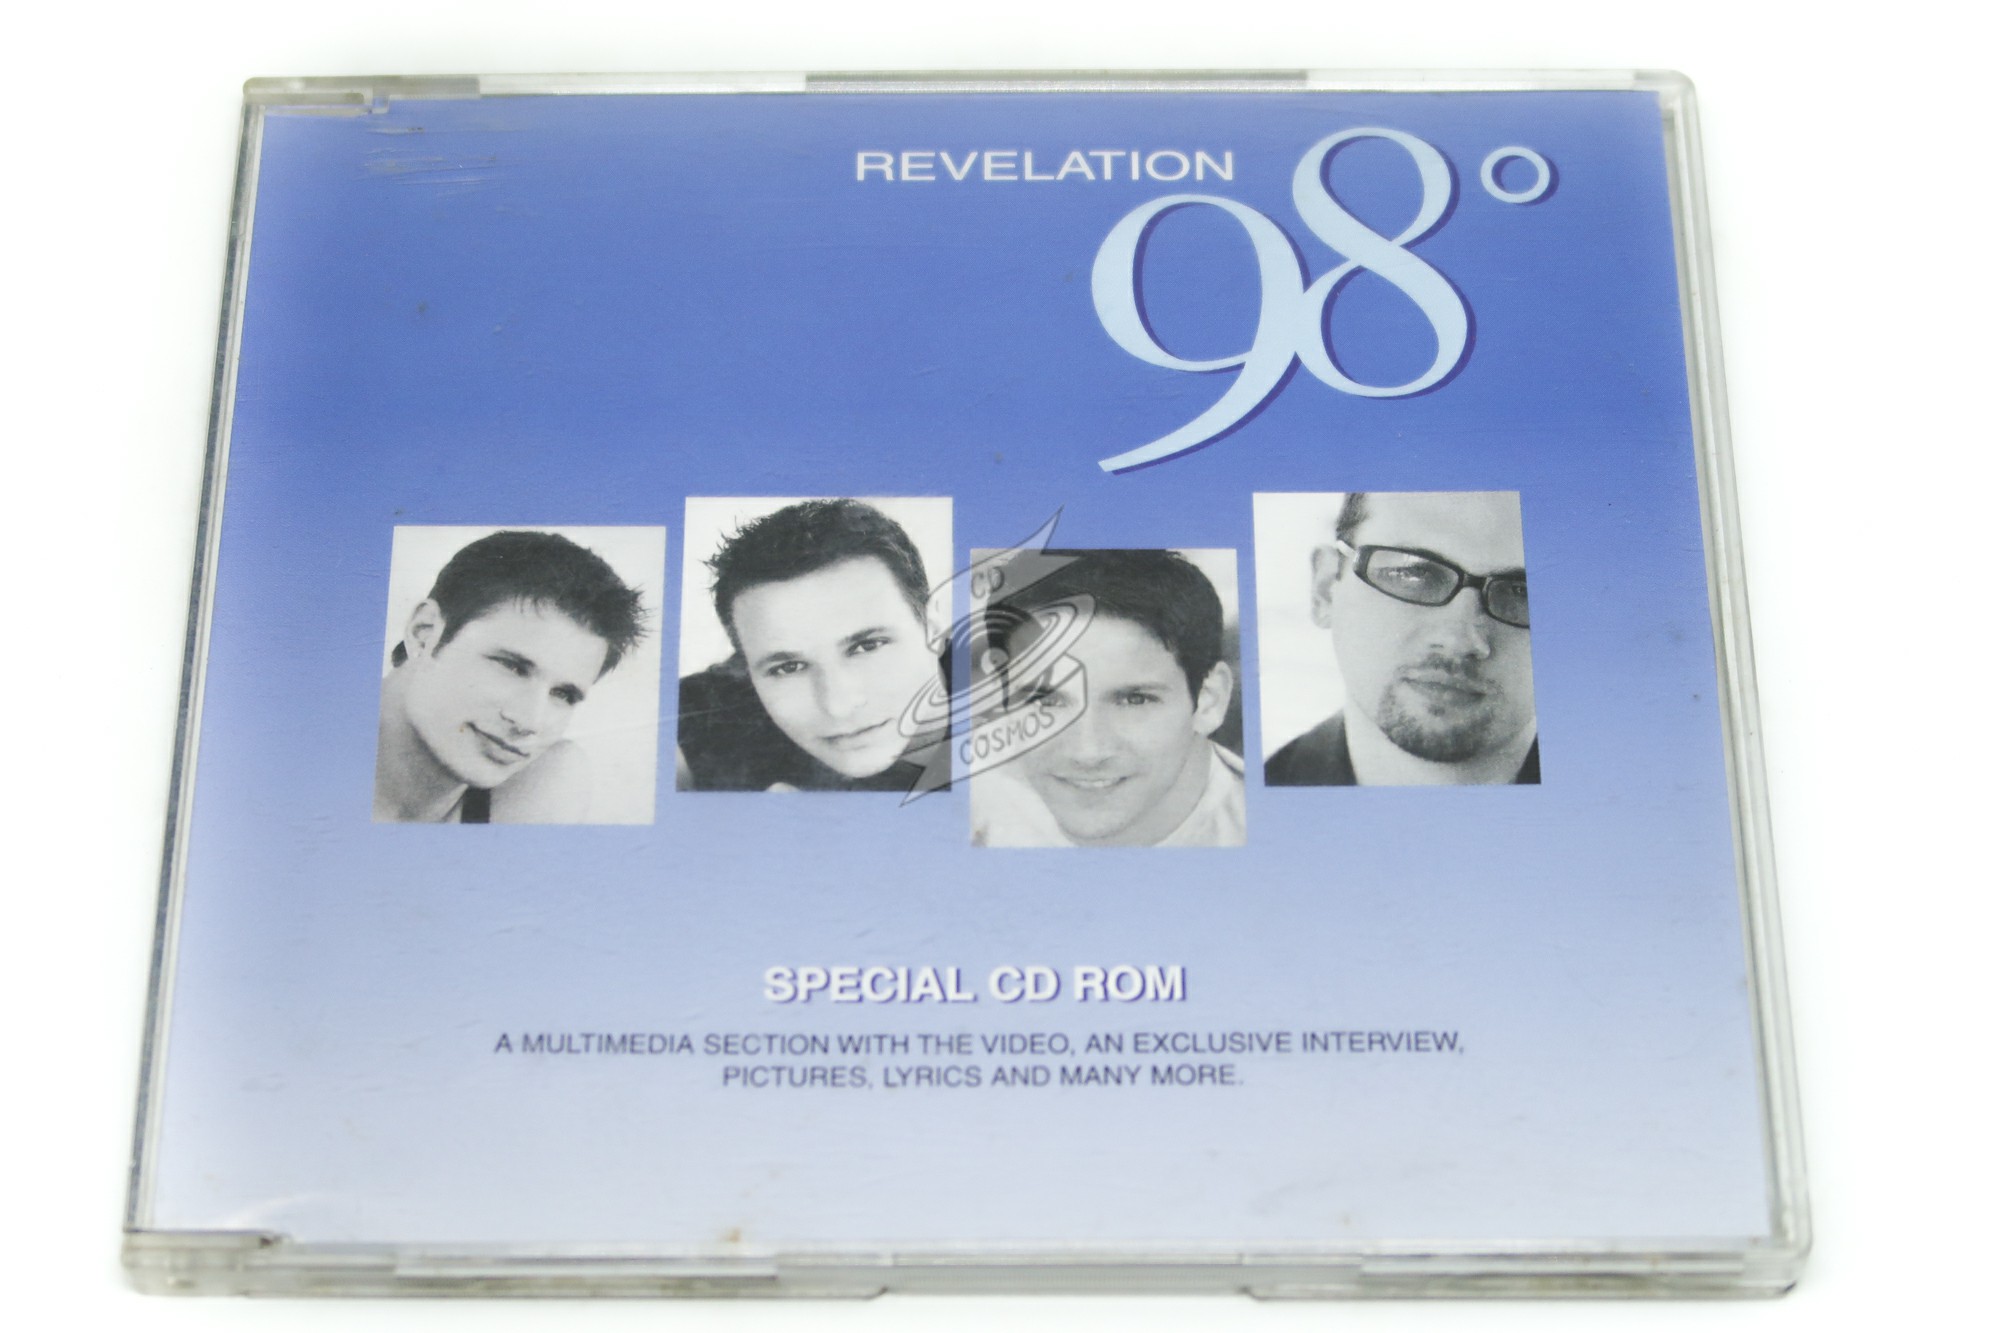 Lot of 4 98 Degrees Cd's Bonus VHS Tape 98 Degrees and Rising Revelation -   Canada